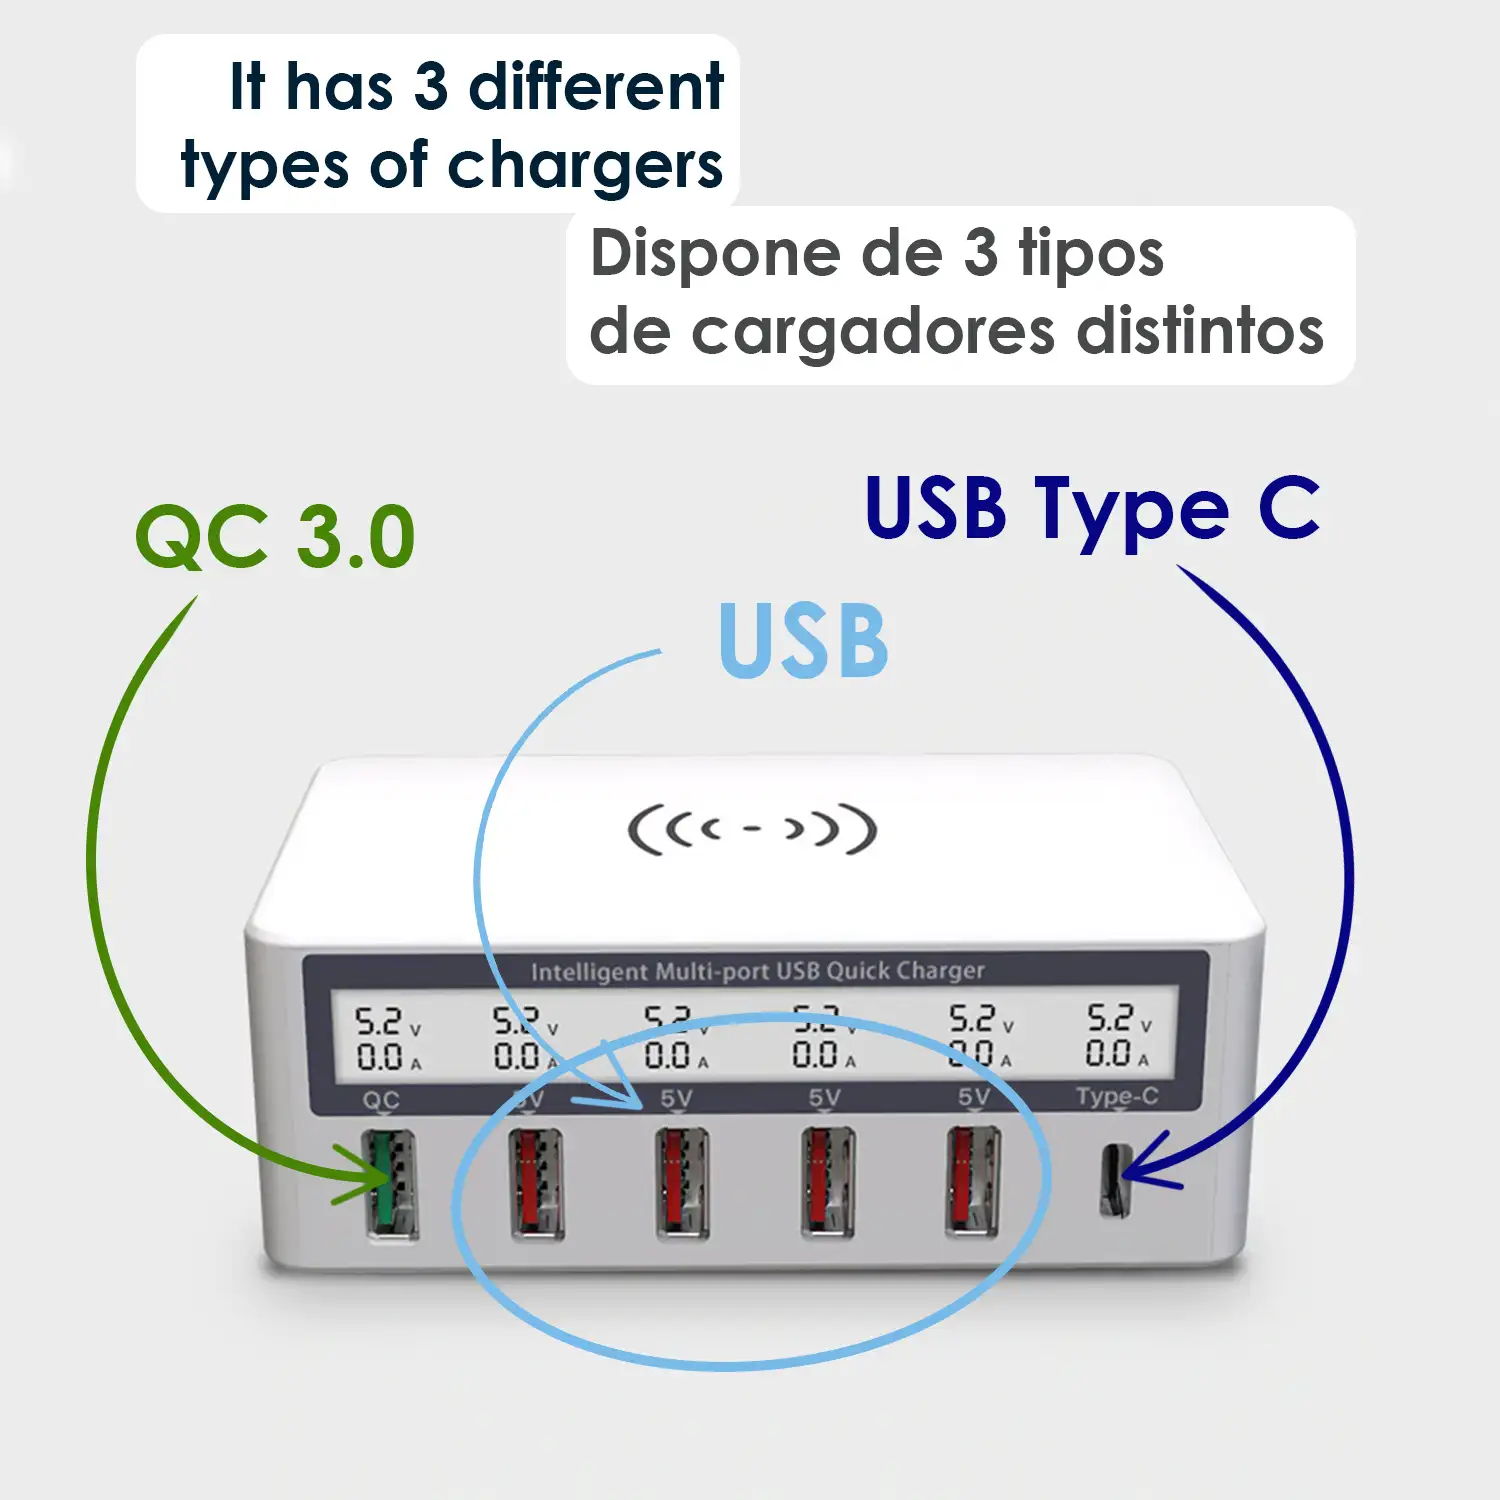 Multi cargador Qi rápido, con 4 tomas USB, 1 salida QC (Quick Charge) y 1 salida Tipo C. Pantalla de información LCD.